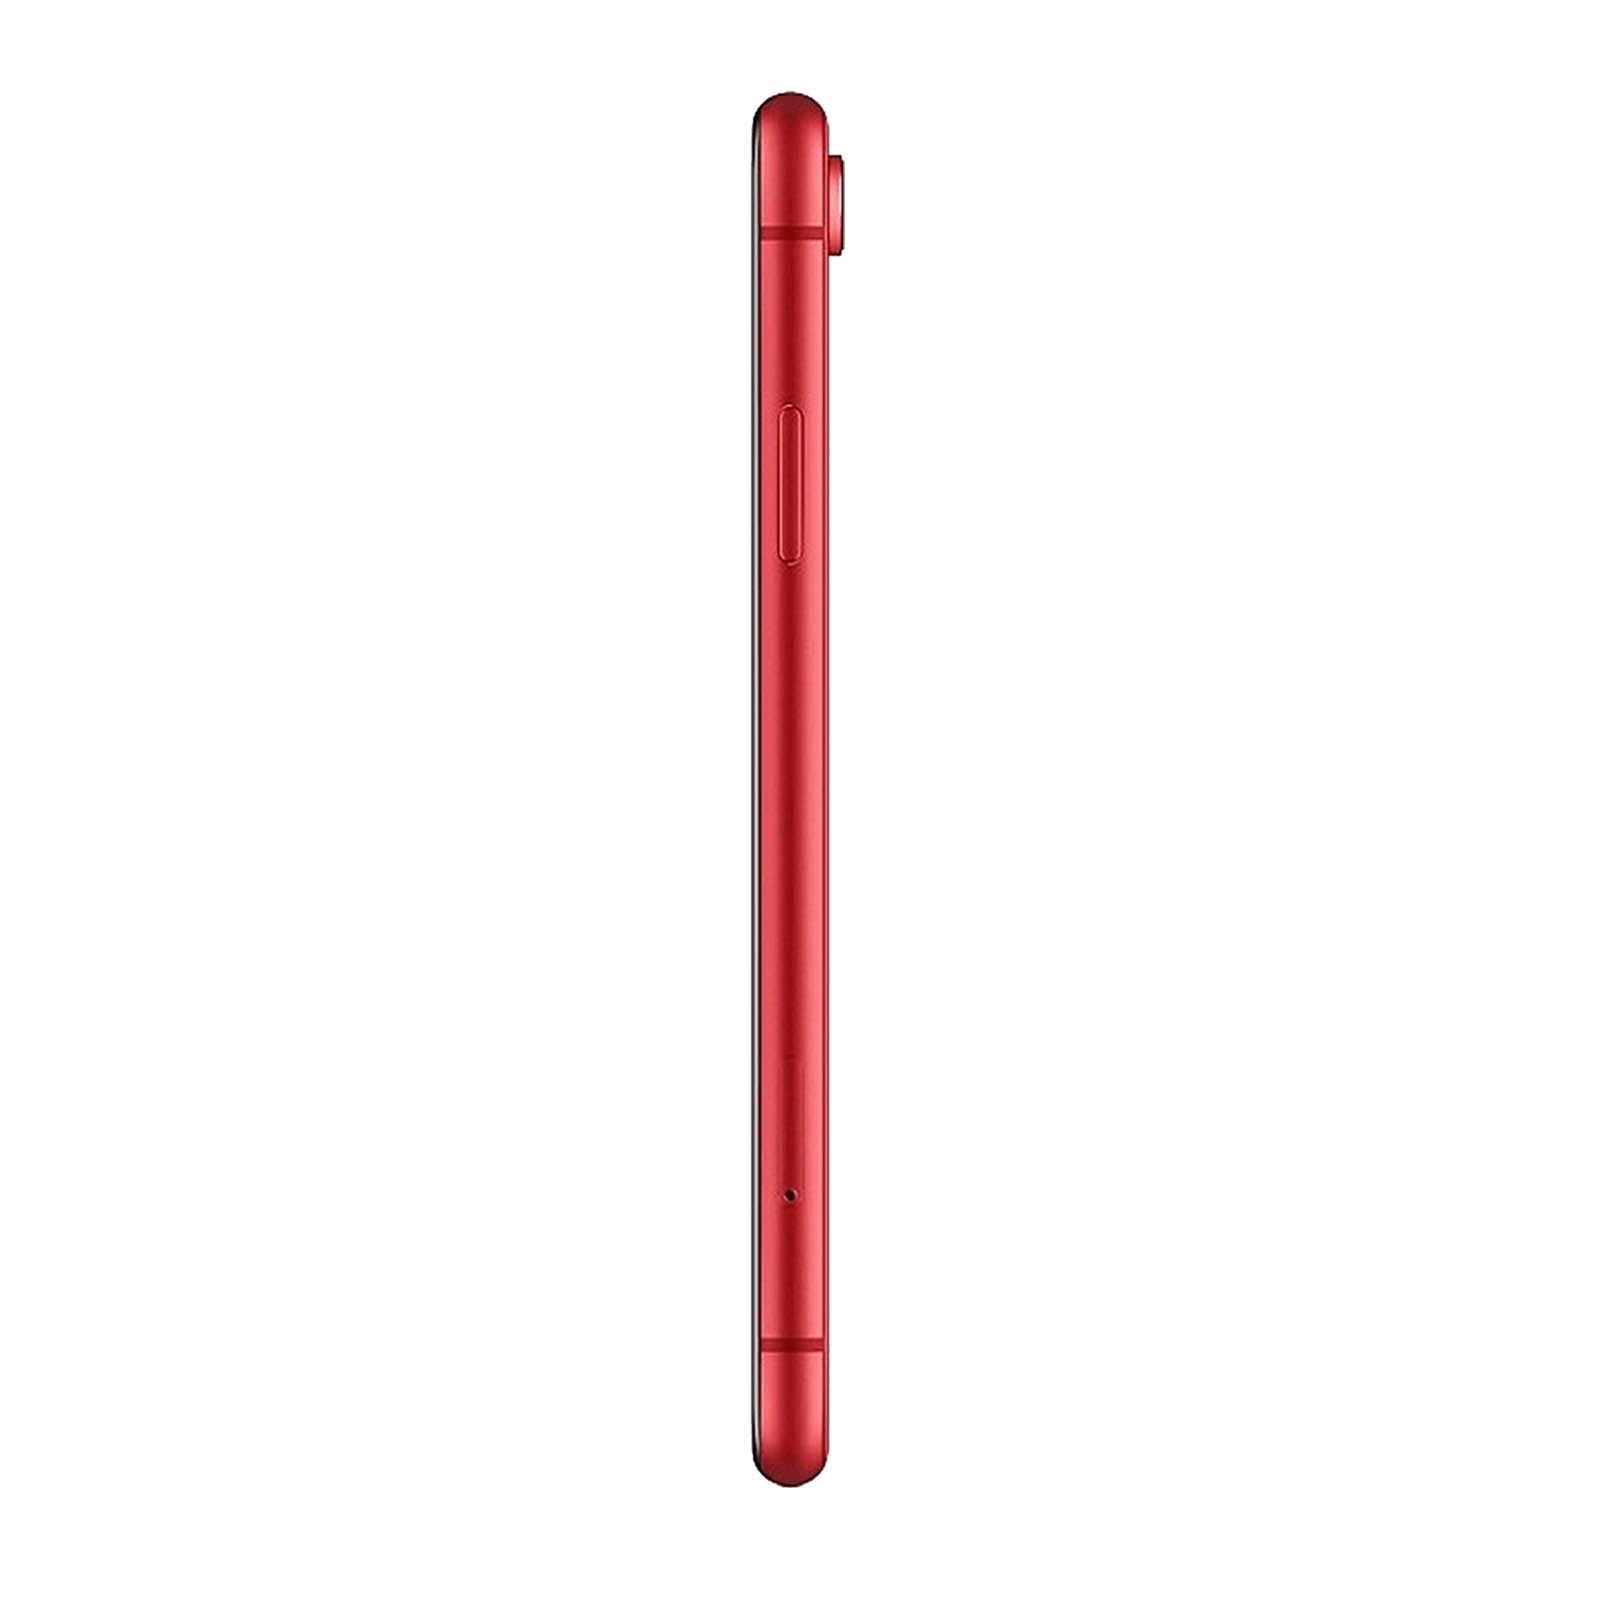 Apple iPhone XR 128GB Rosso Buono Sbloccato